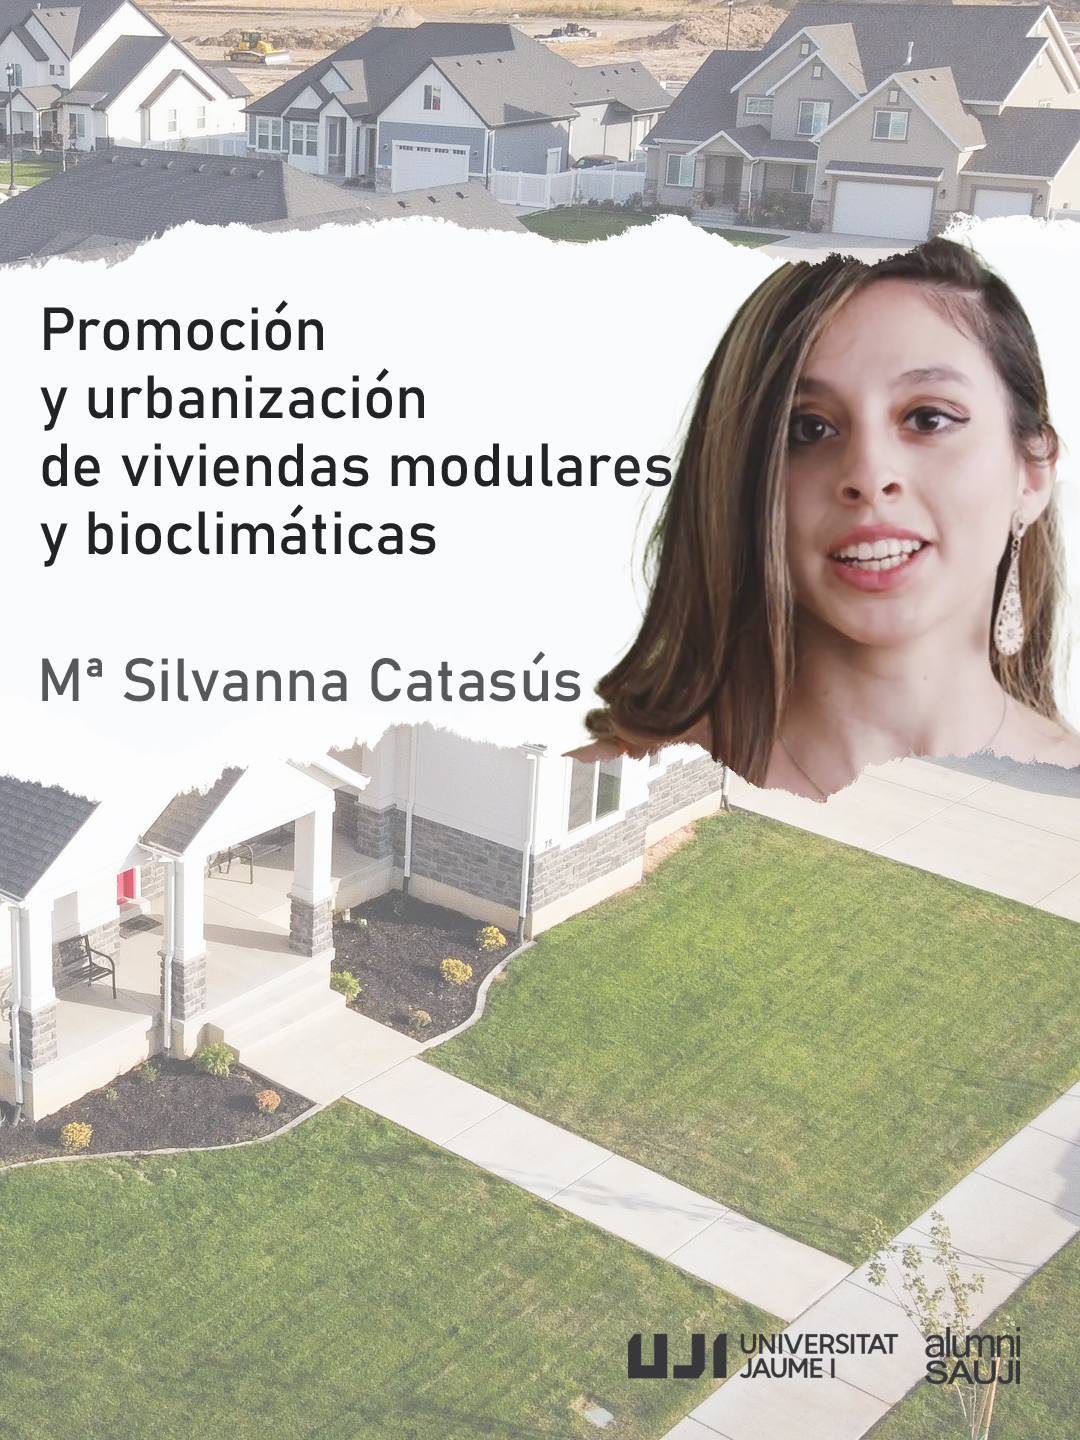 María Silvanna Catasús tf-biocats TFSCatasusverticalinterior